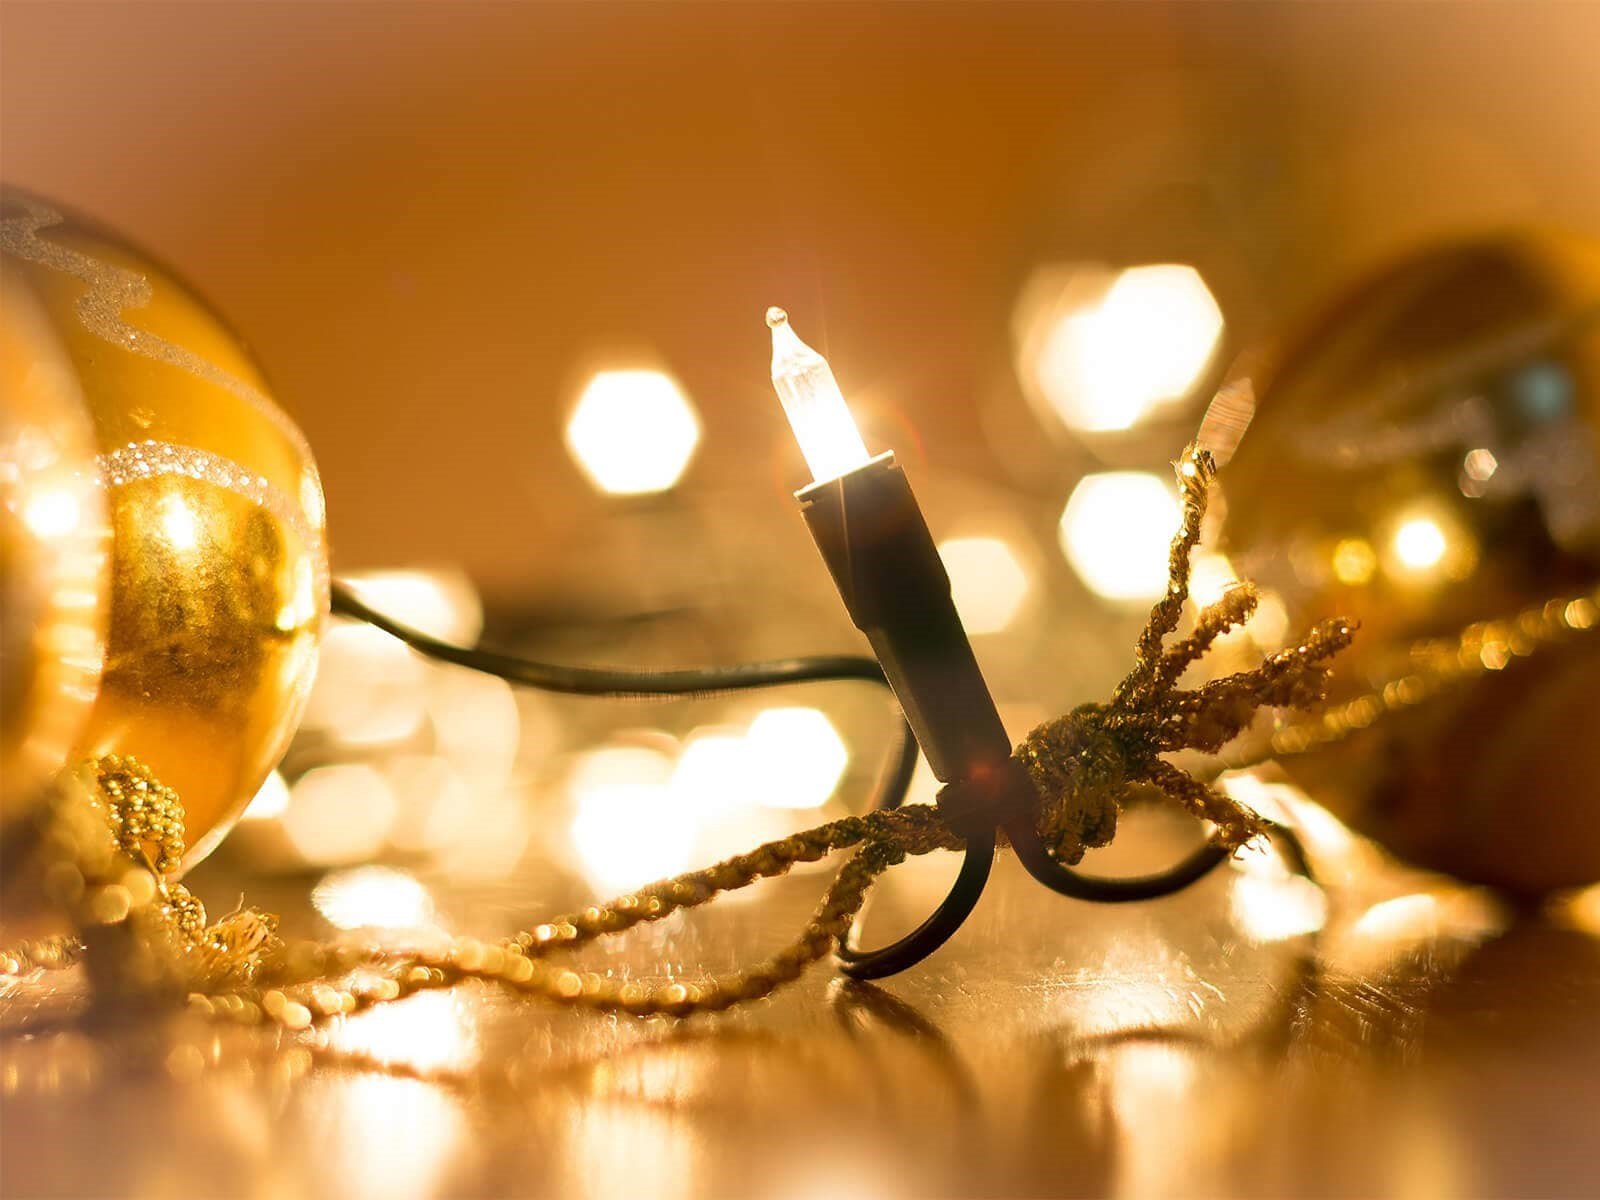 Julekæde med varmt lys ved guldfarvet julekugler